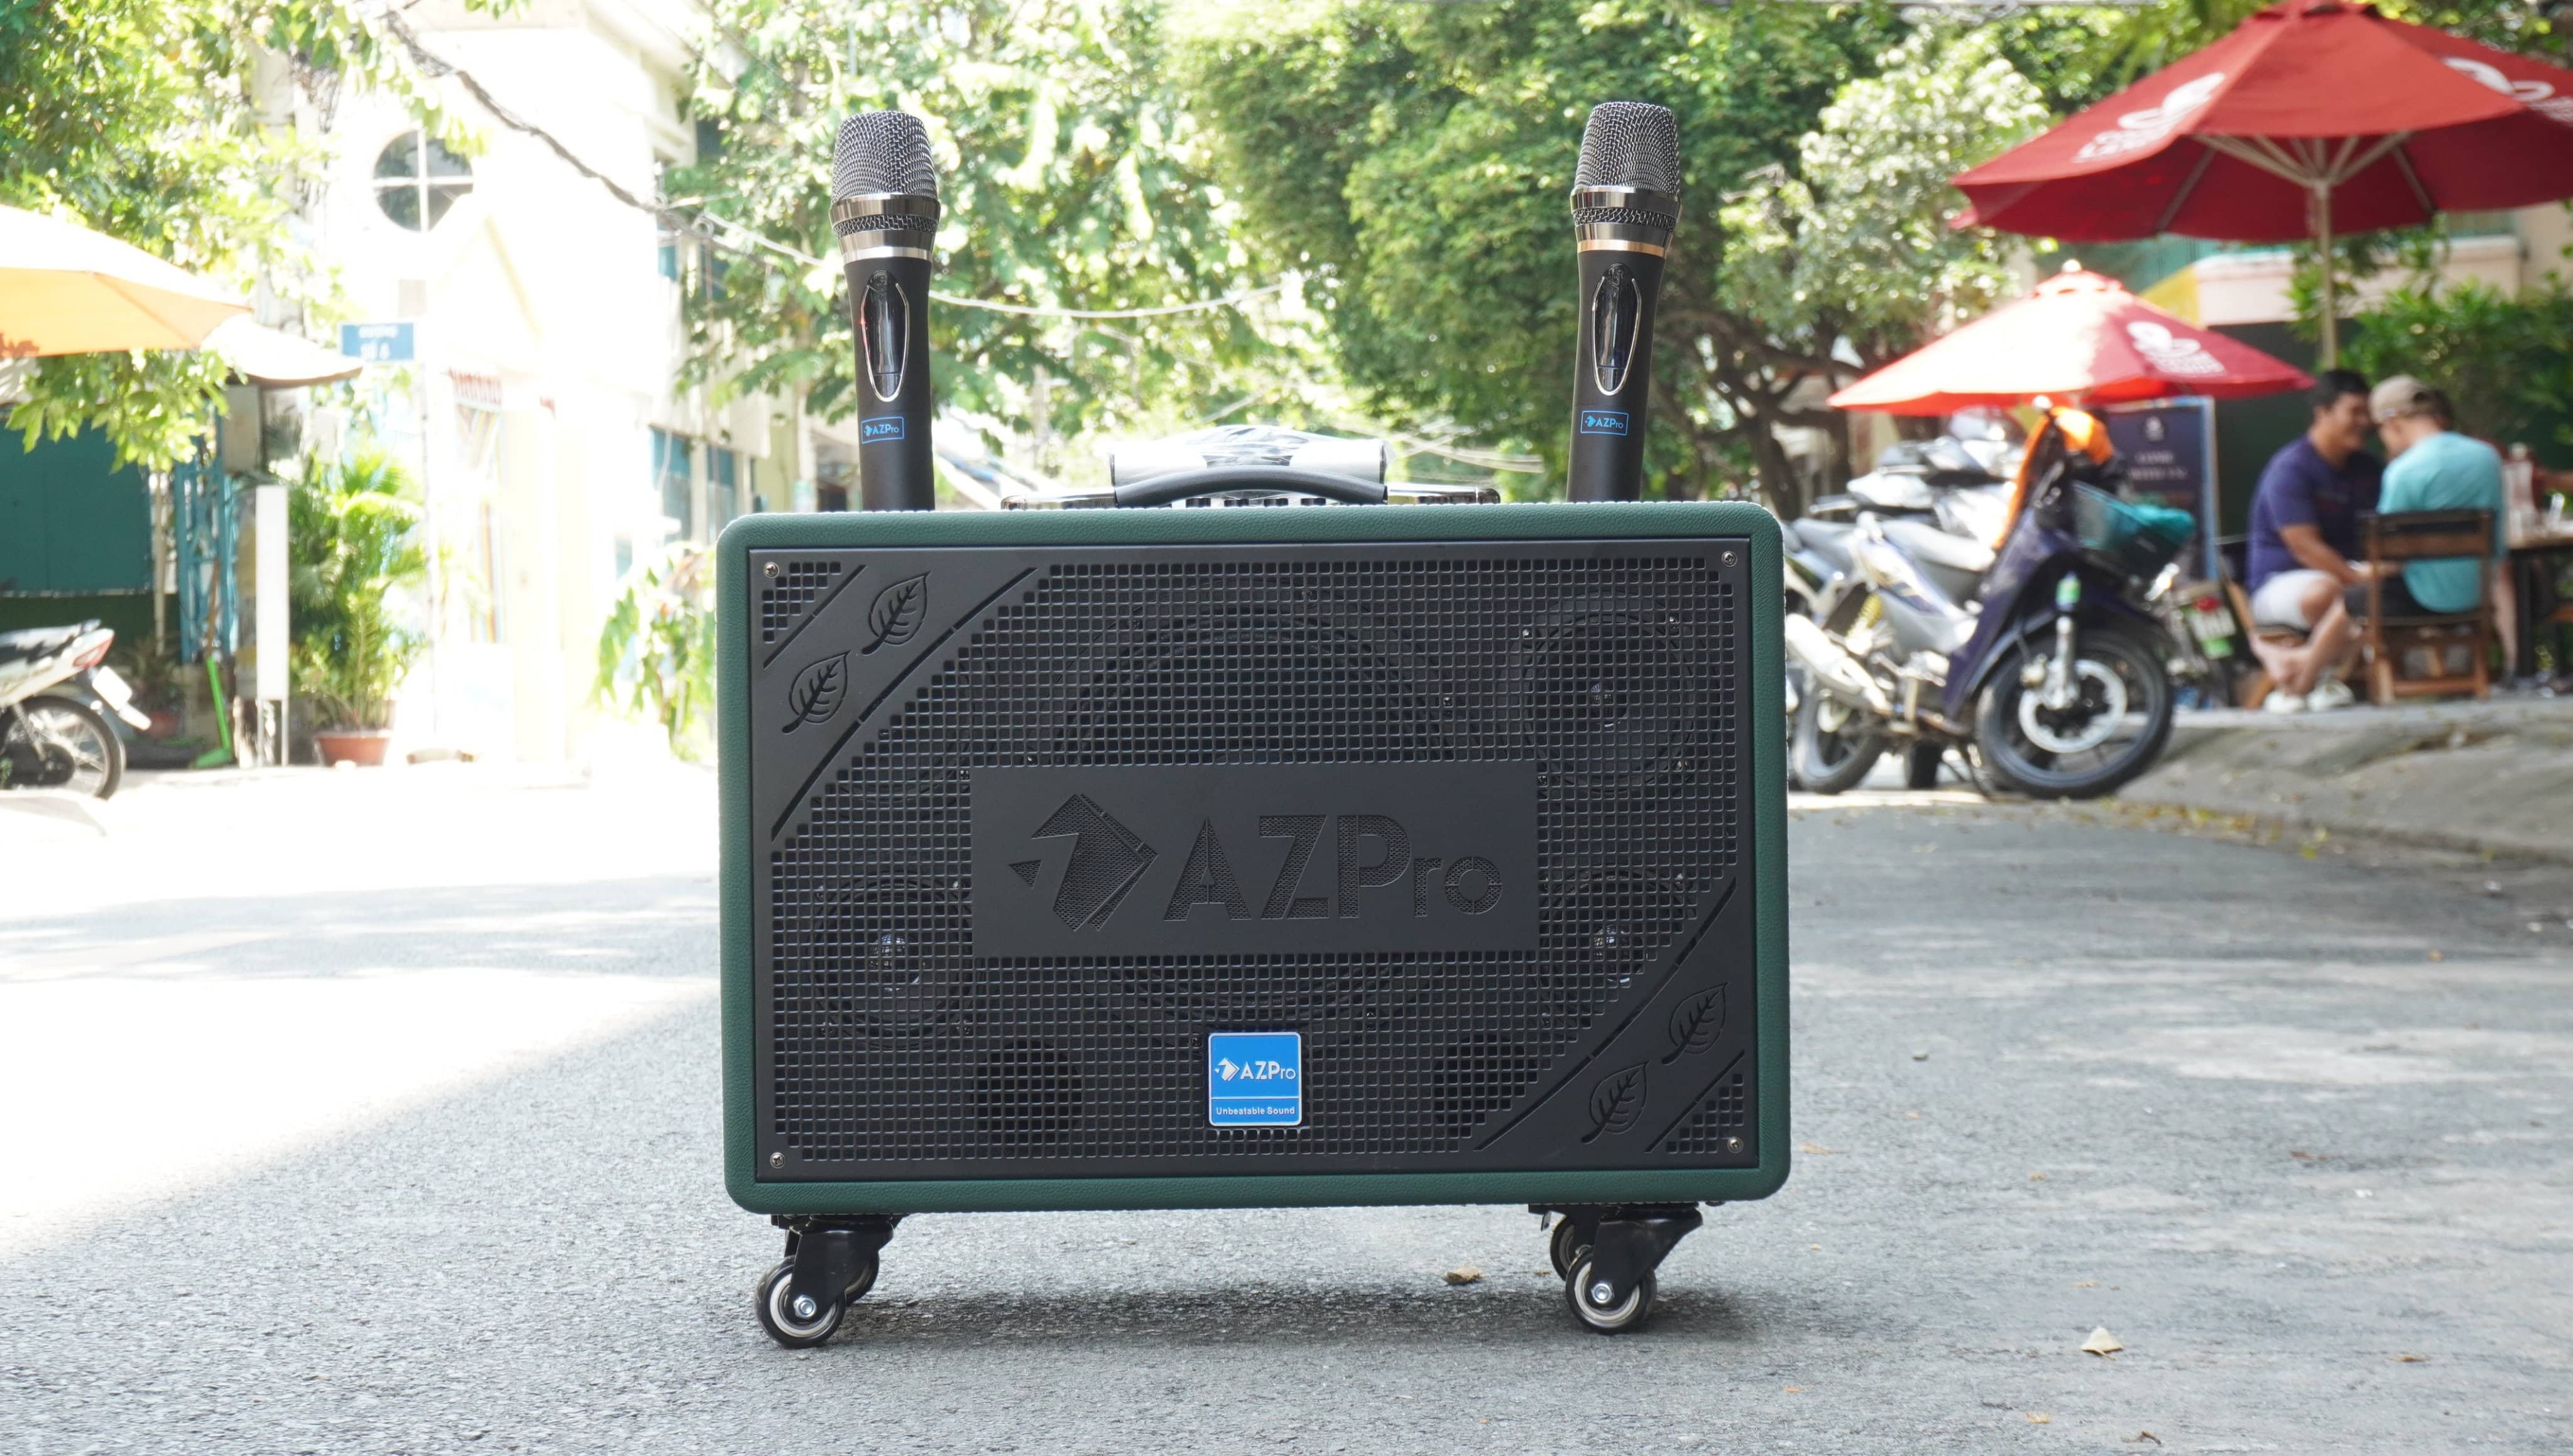 ( AZPRO )Loa karaoke.Loa Kéo Chất Lượng Cao AZPRO AZ- 318 Bass 20 kèm 2 Micro không dây kim loại chính hãng với thiết kế mạnh mẽ vỏ gỗ sơn sần.bảo hành 12 tháng